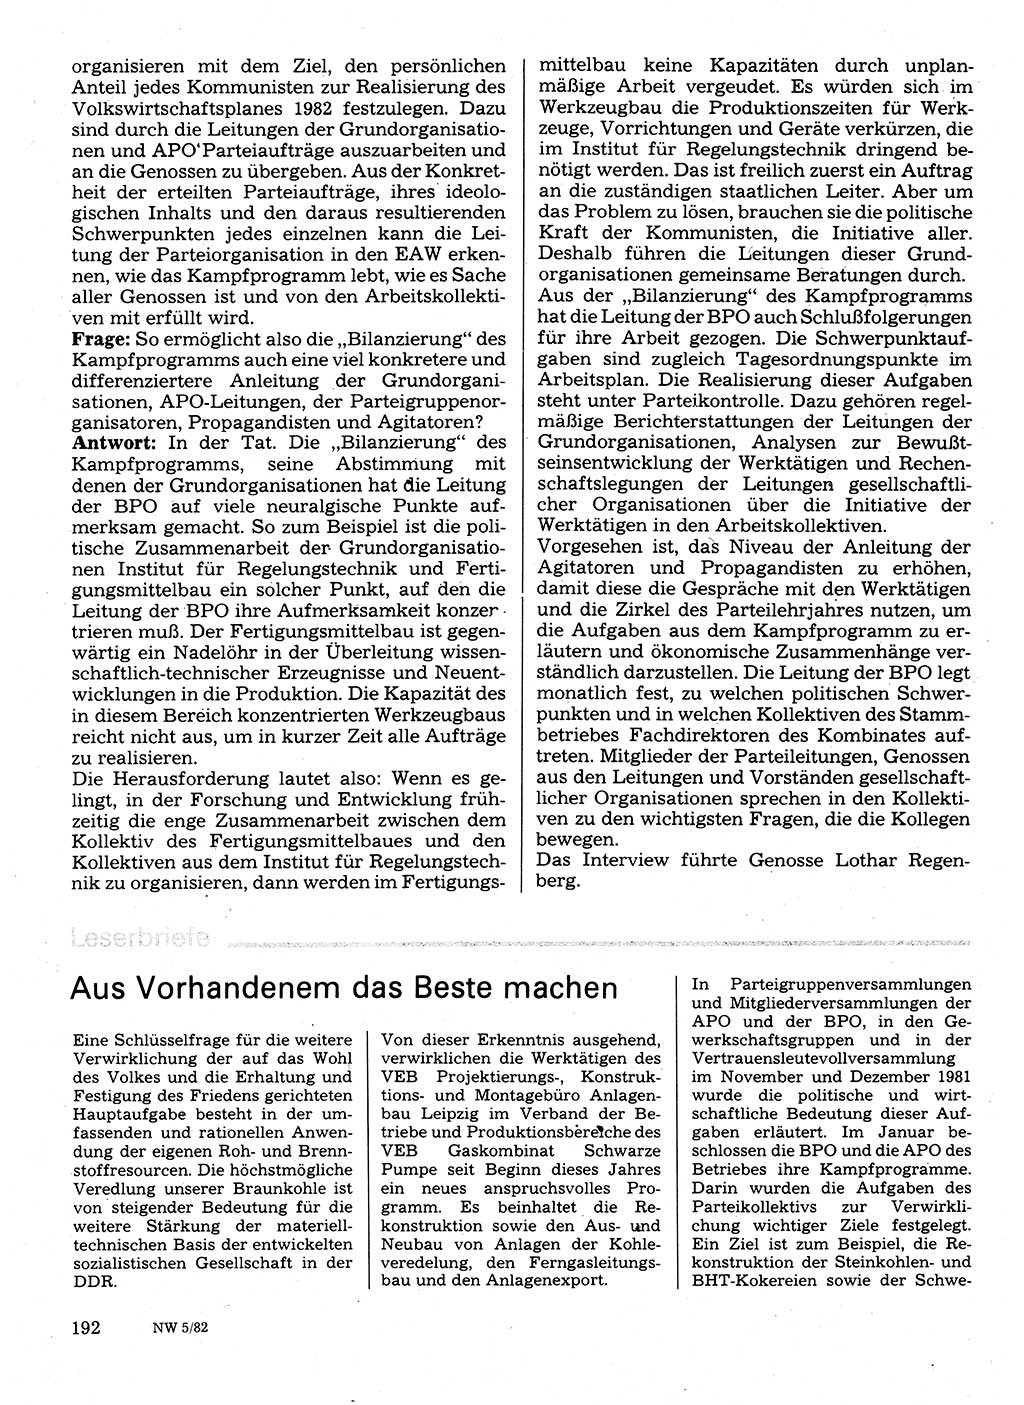 Neuer Weg (NW), Organ des Zentralkomitees (ZK) der SED (Sozialistische Einheitspartei Deutschlands) für Fragen des Parteilebens, 37. Jahrgang [Deutsche Demokratische Republik (DDR)] 1982, Seite 192 (NW ZK SED DDR 1982, S. 192)